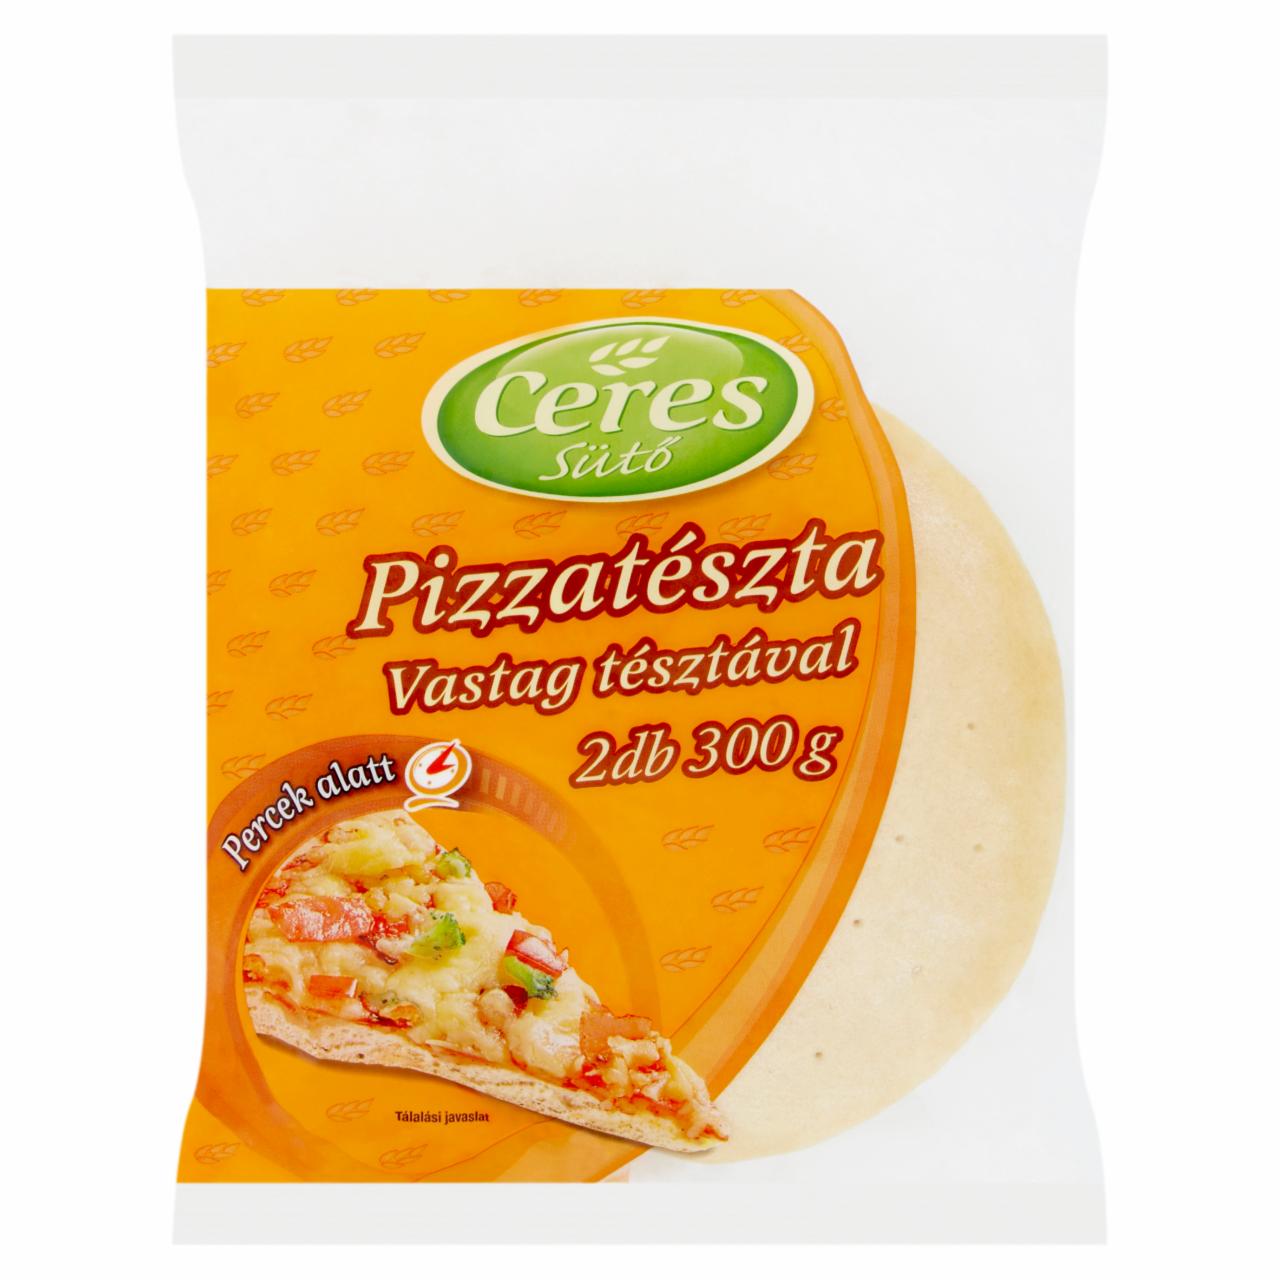 Képek - Ceres Sütő pizzatészta vastag tésztával 2 db 300 g